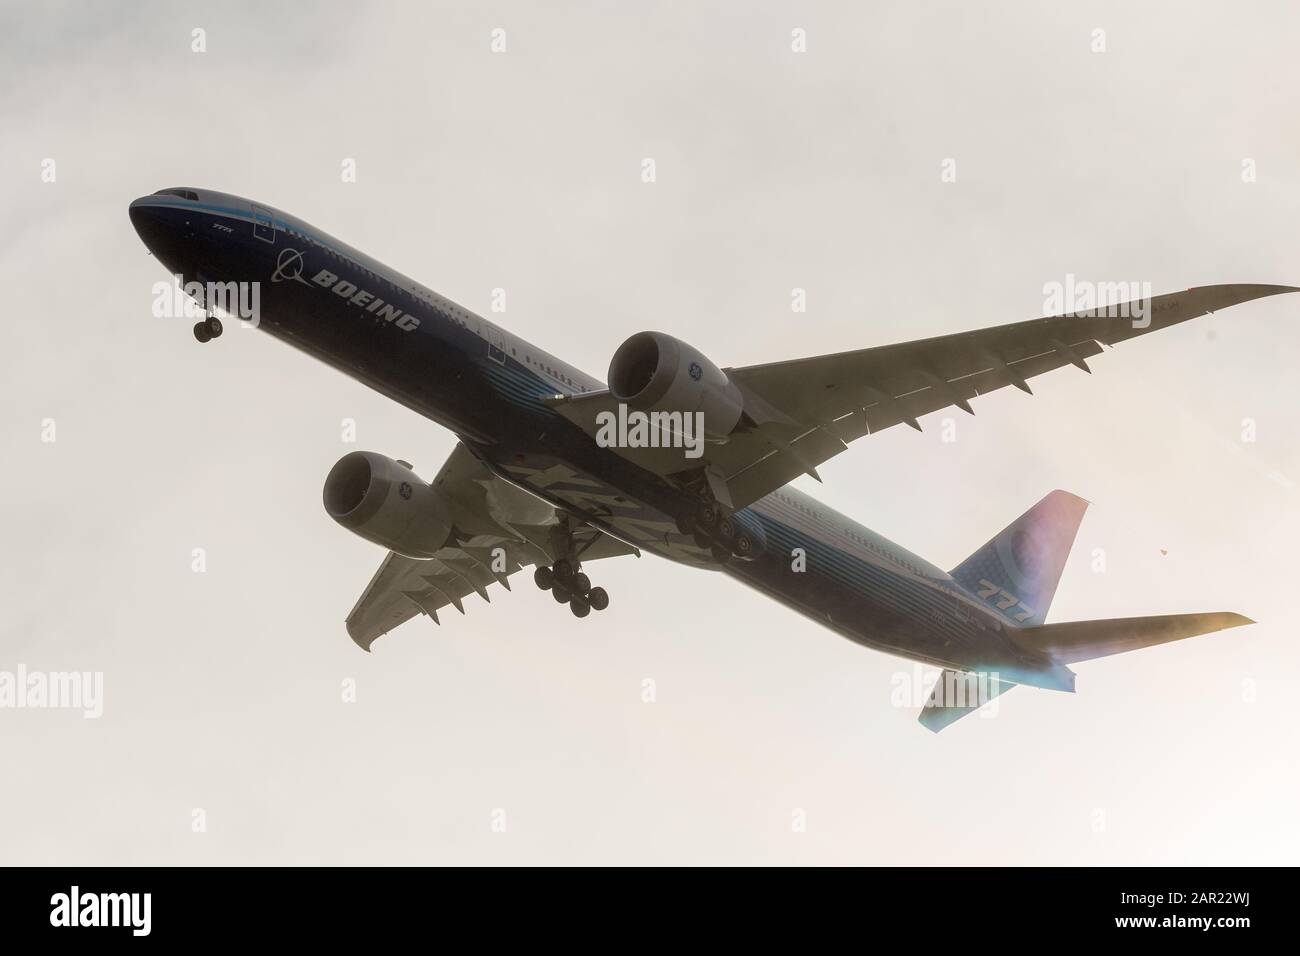 Everett, Washington, USA - 25. Januar: Boeings 777X startet auf seinem Jungfernflug, nachdem die ersten beiden Testflüge witterungsbedingt verzögert wurden Stockfoto